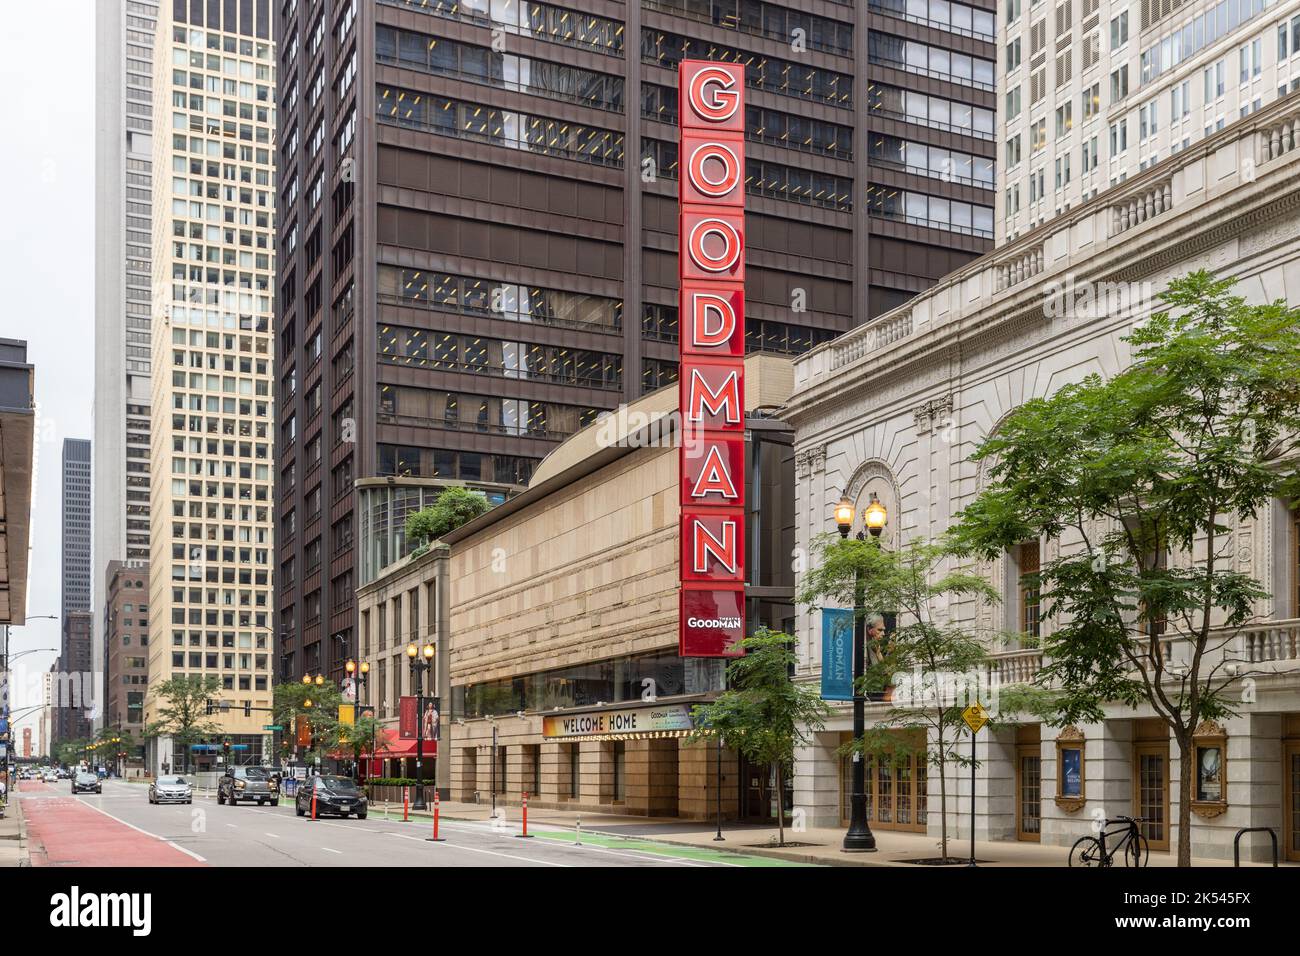 Das Goodman Theatre ist eine professionelle Theatergesellschaft in der Innenstadt von Chicago und eine der ältesten aktiven gemeinnützigen Theaterorganisationen. Stockfoto